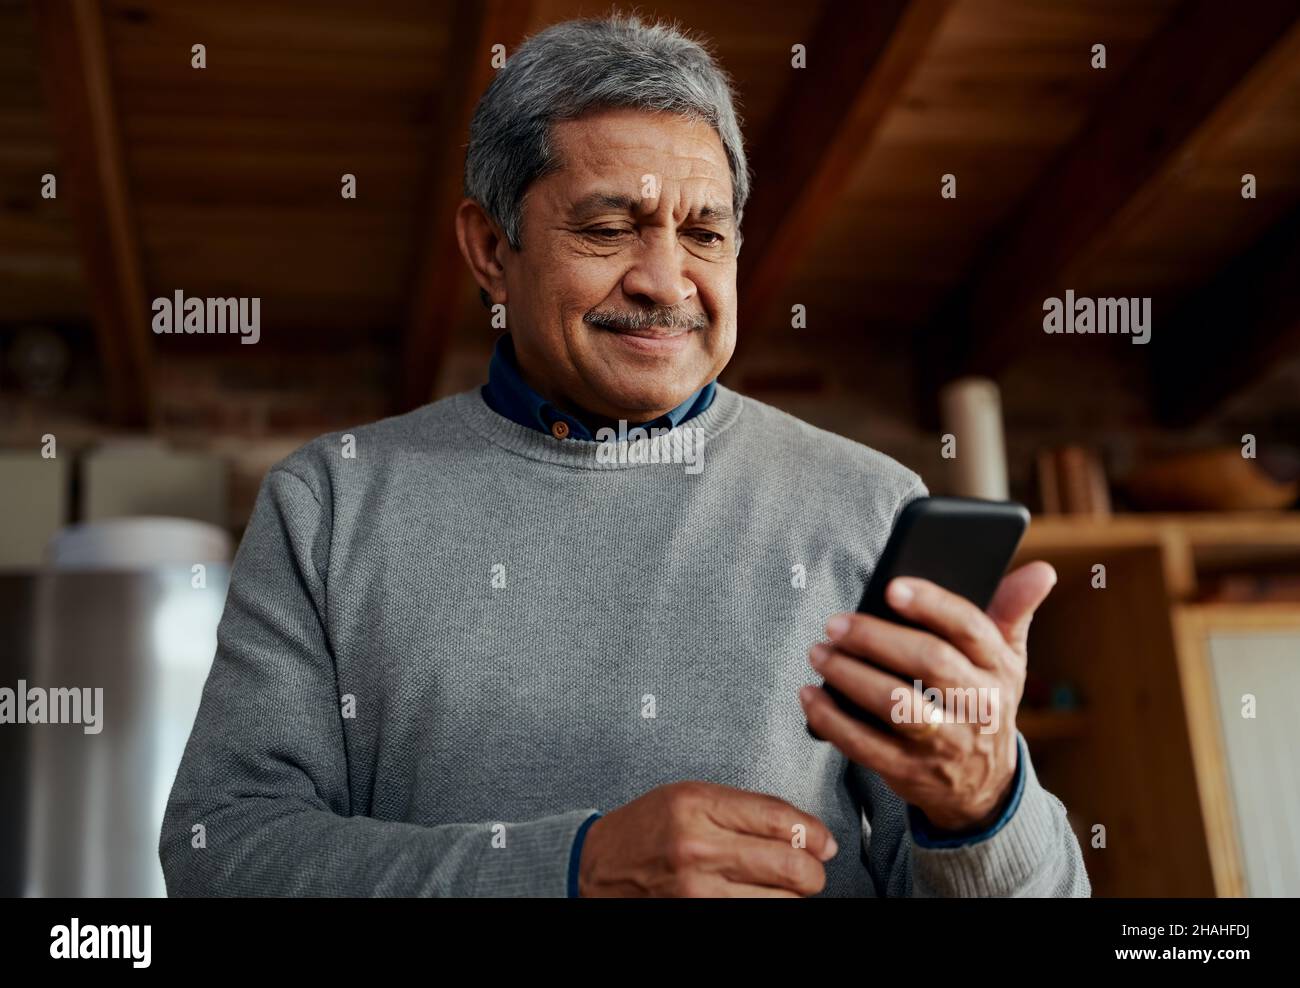 Lächelnder, multikultureller älterer Mann, der eine Nachricht auf dem Smartphone liest, während er in der modernen Küche steht. Stockfoto